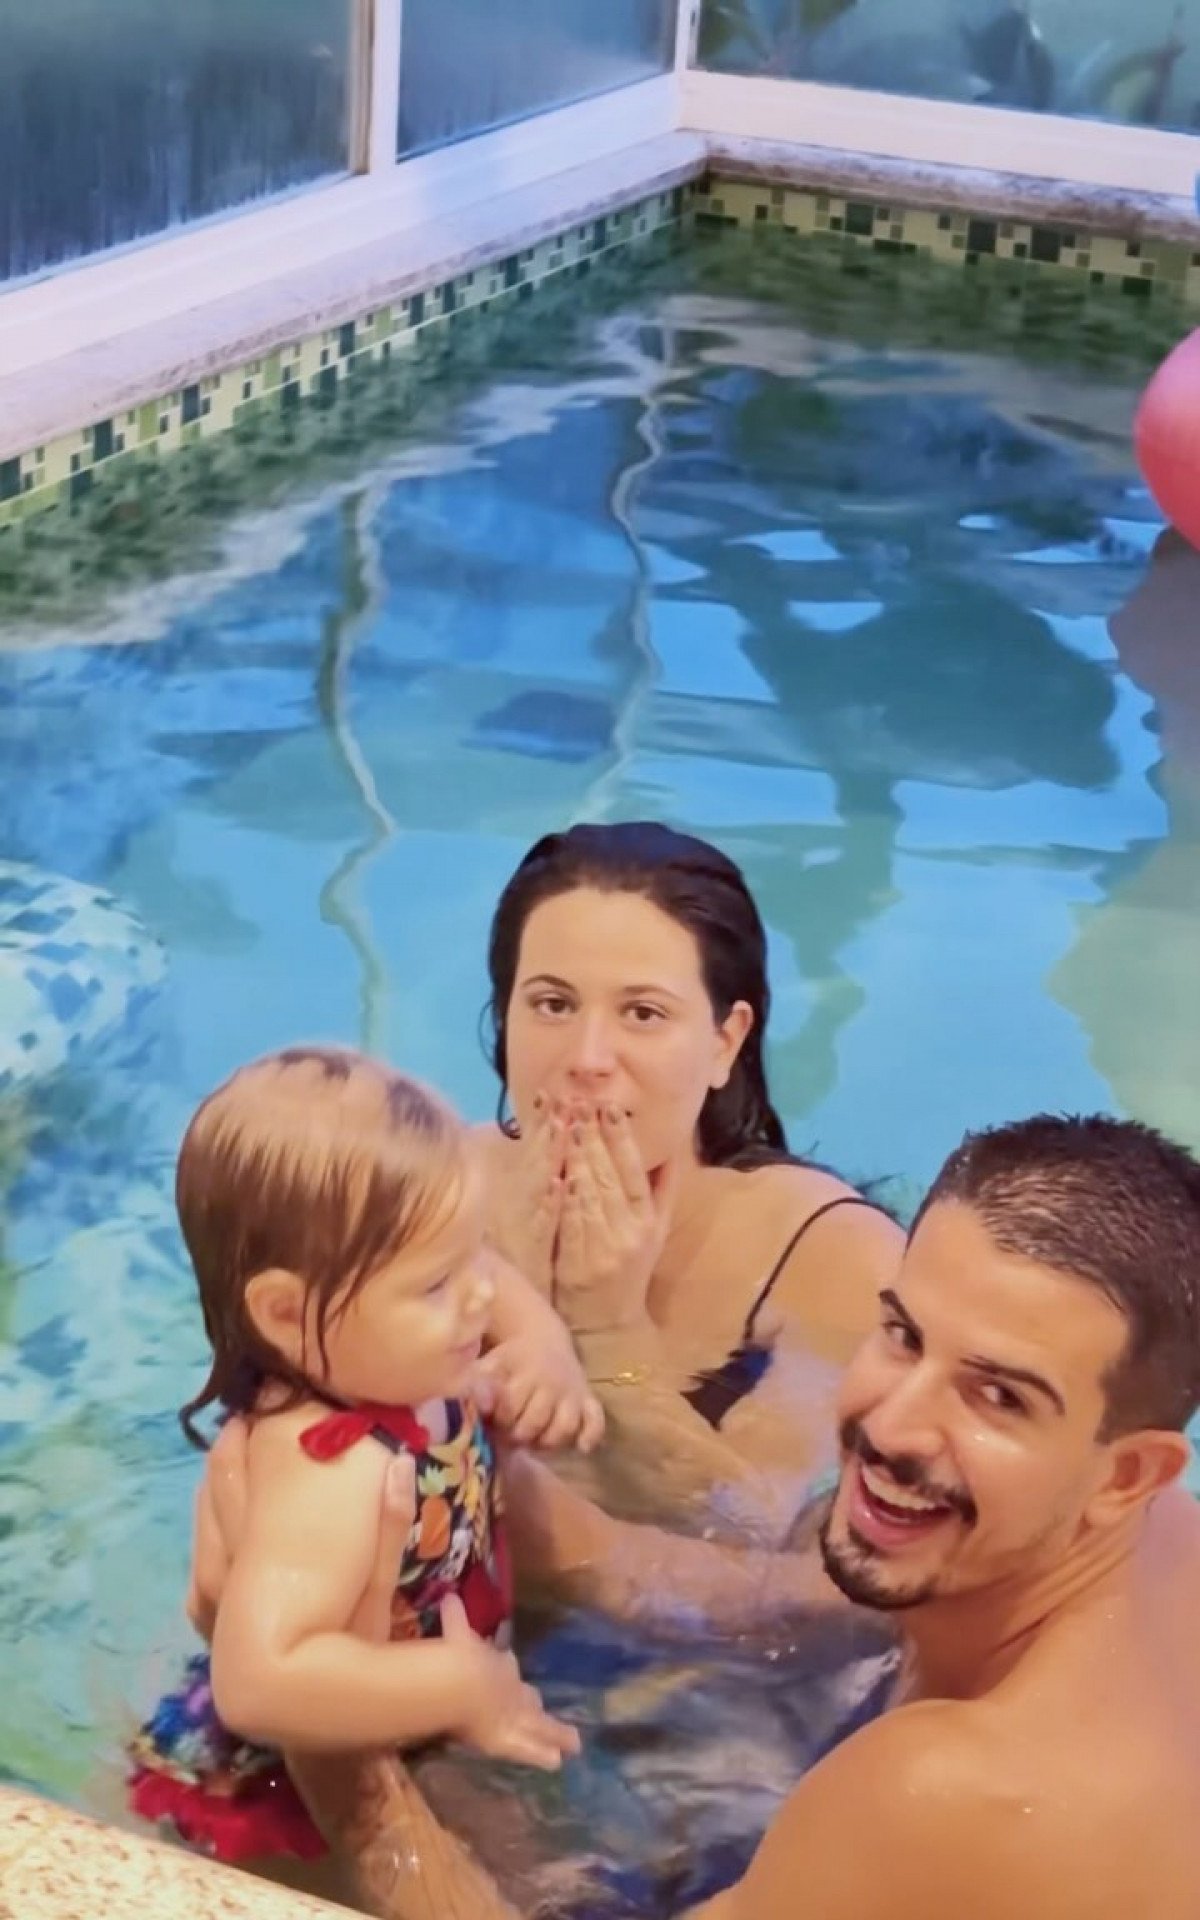 Vídeo! Edson Celulari encanta seguidores com clipe dos filhos brincando na piscina | Celebridades